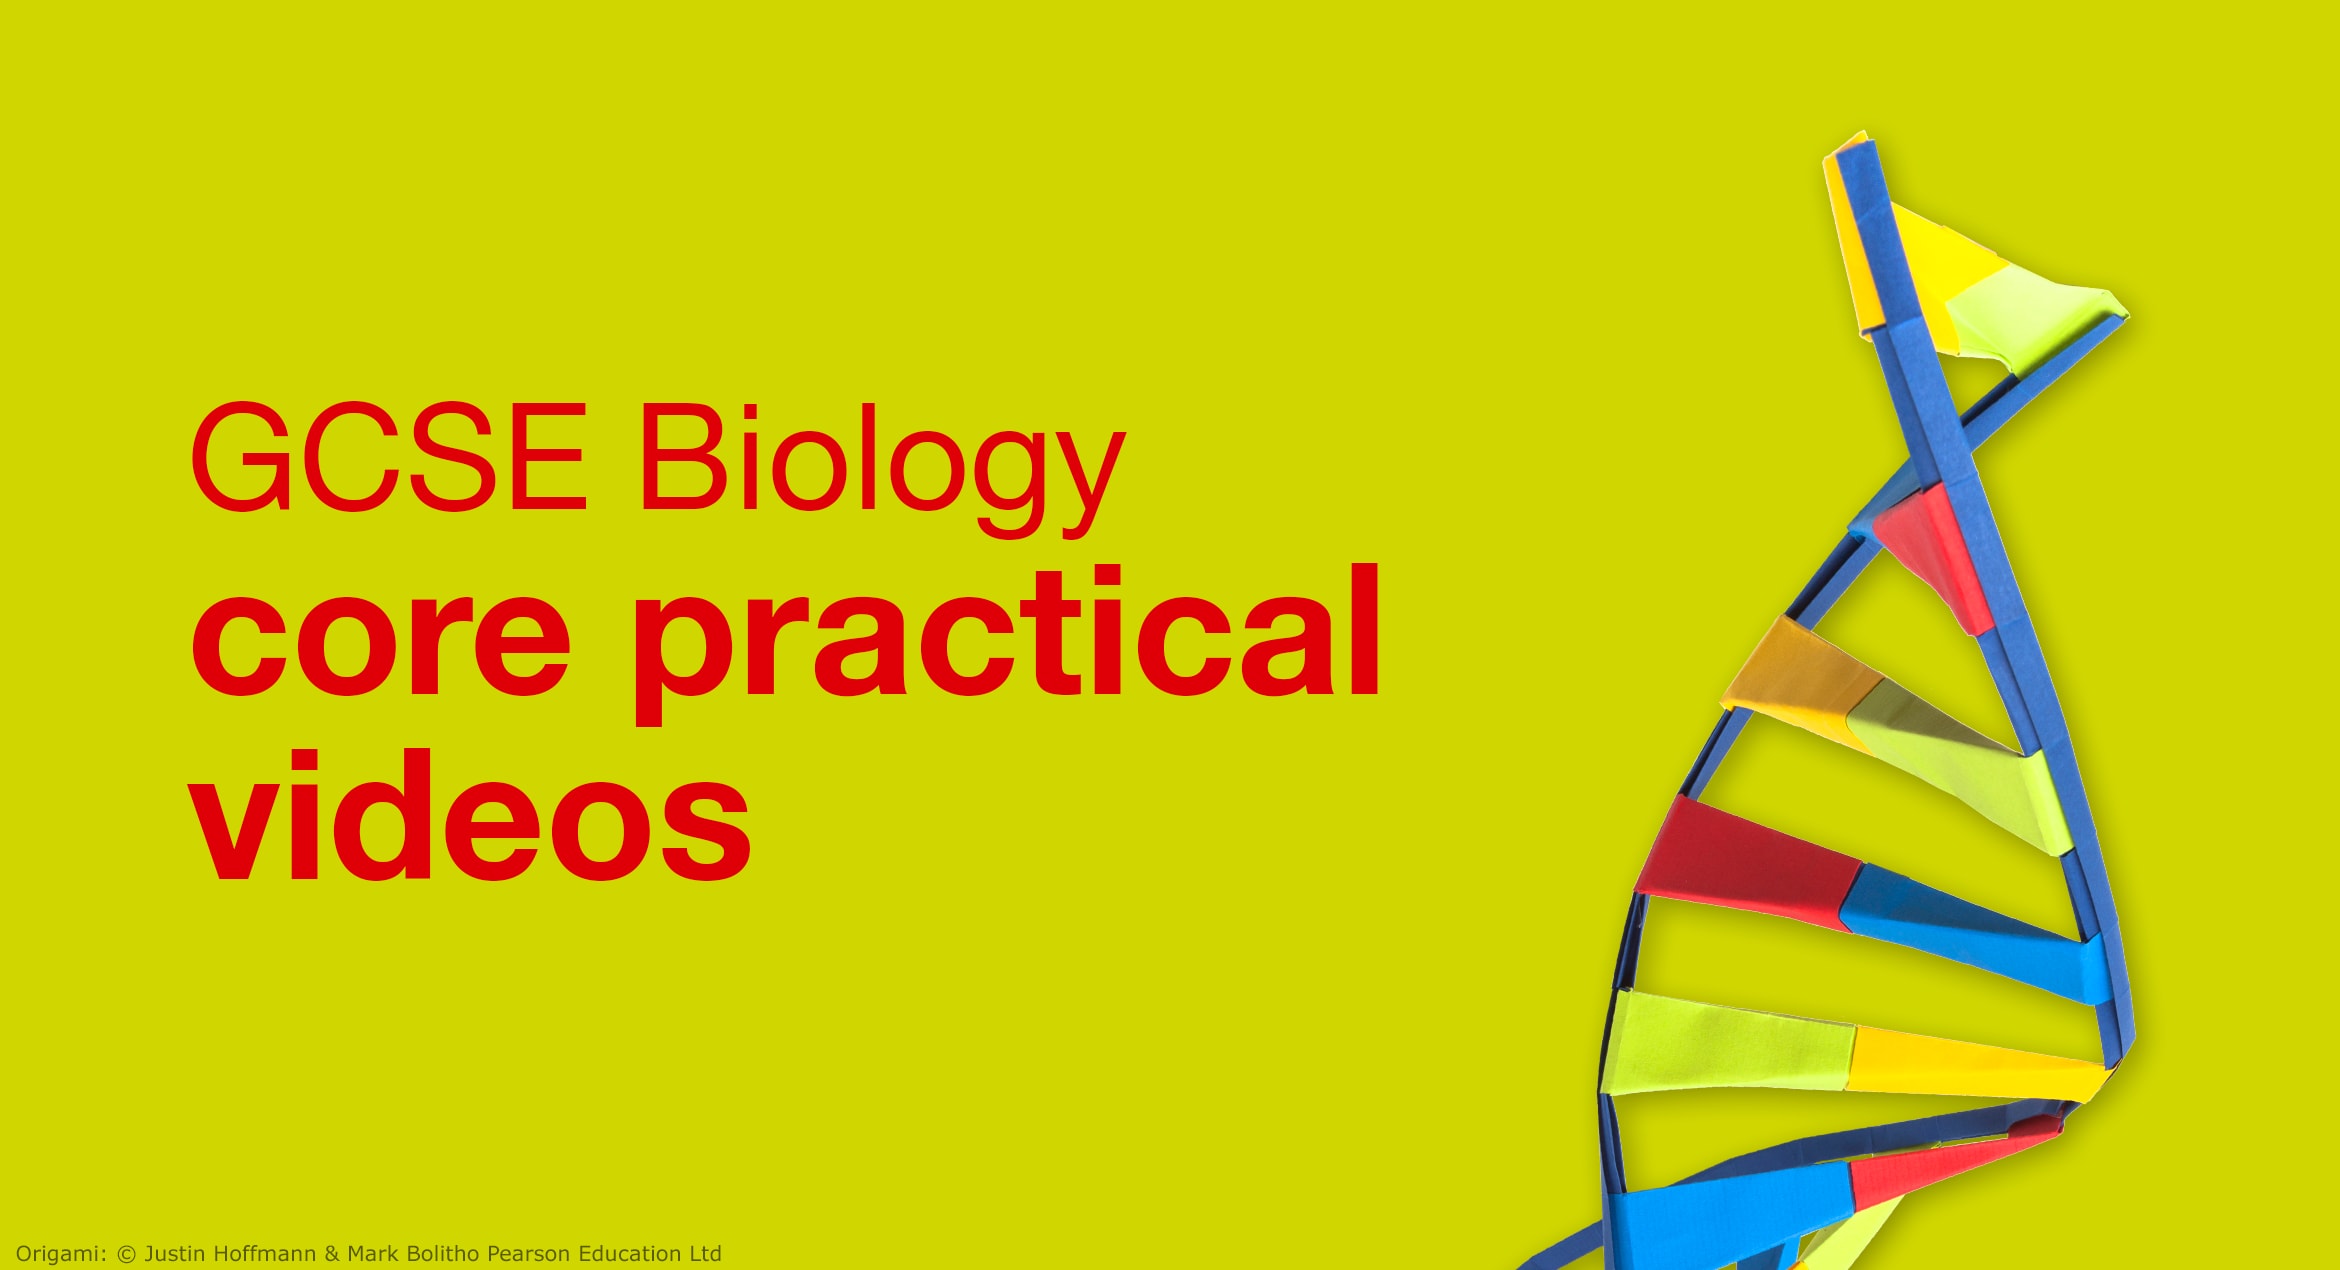 GCSE Biology core practical videos